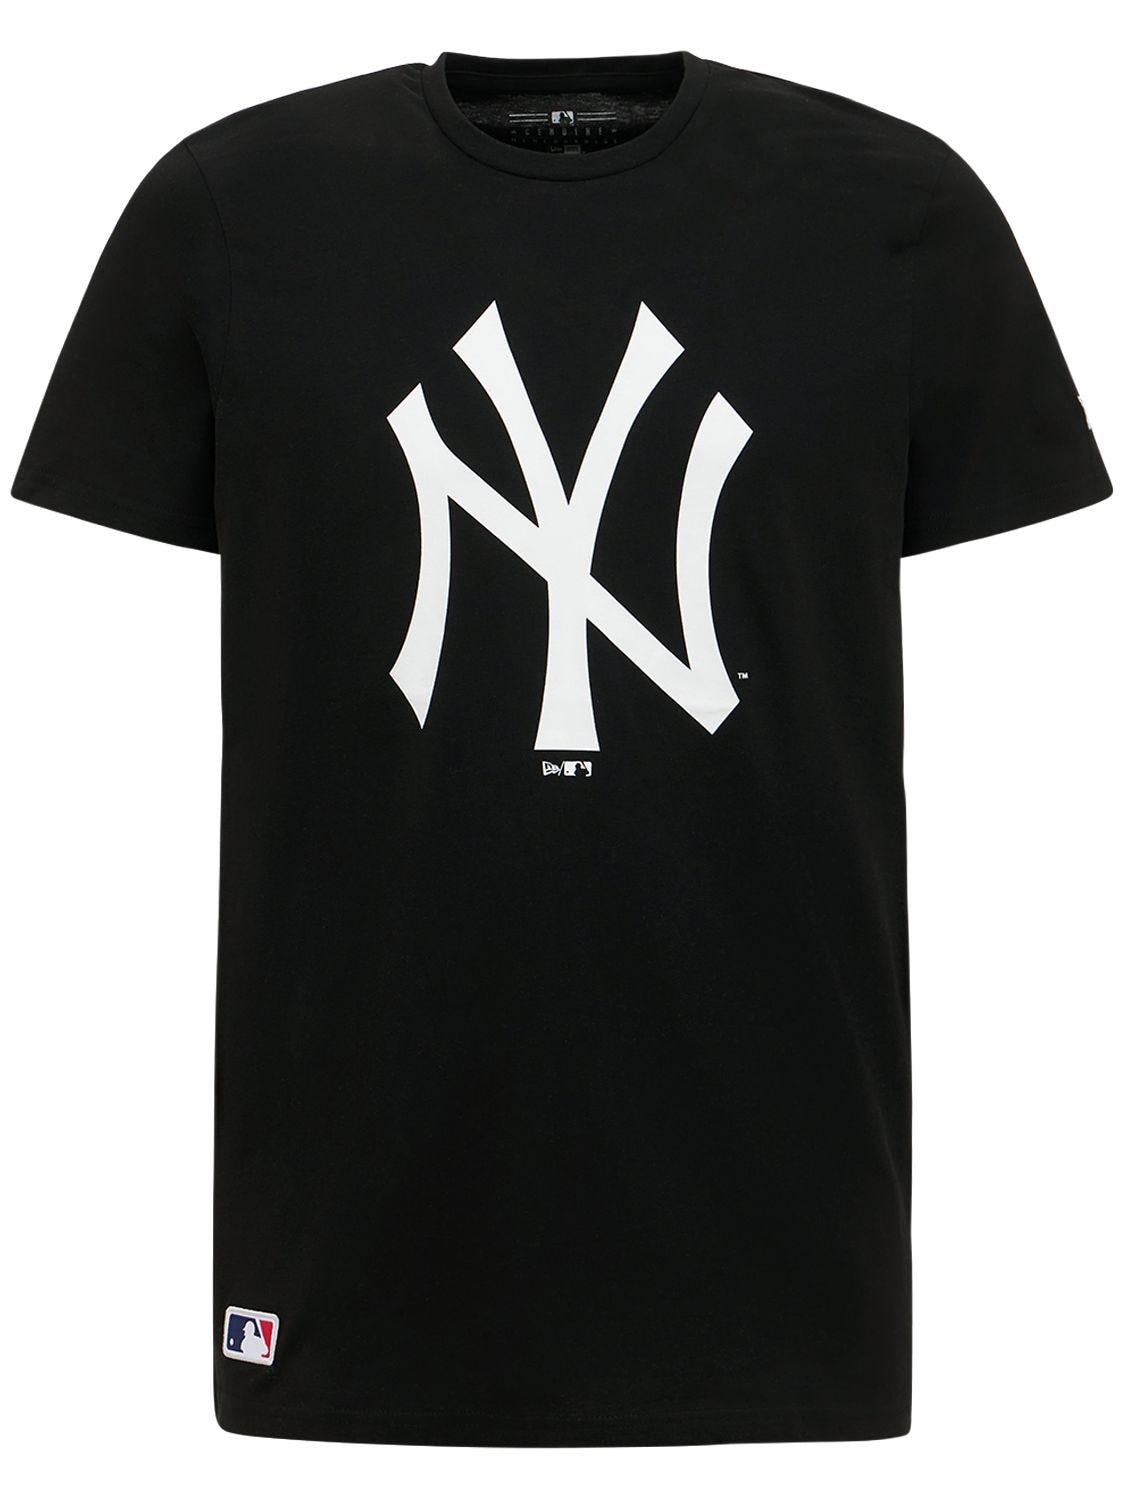 New Era Ny Yankees棉质t恤 In Black